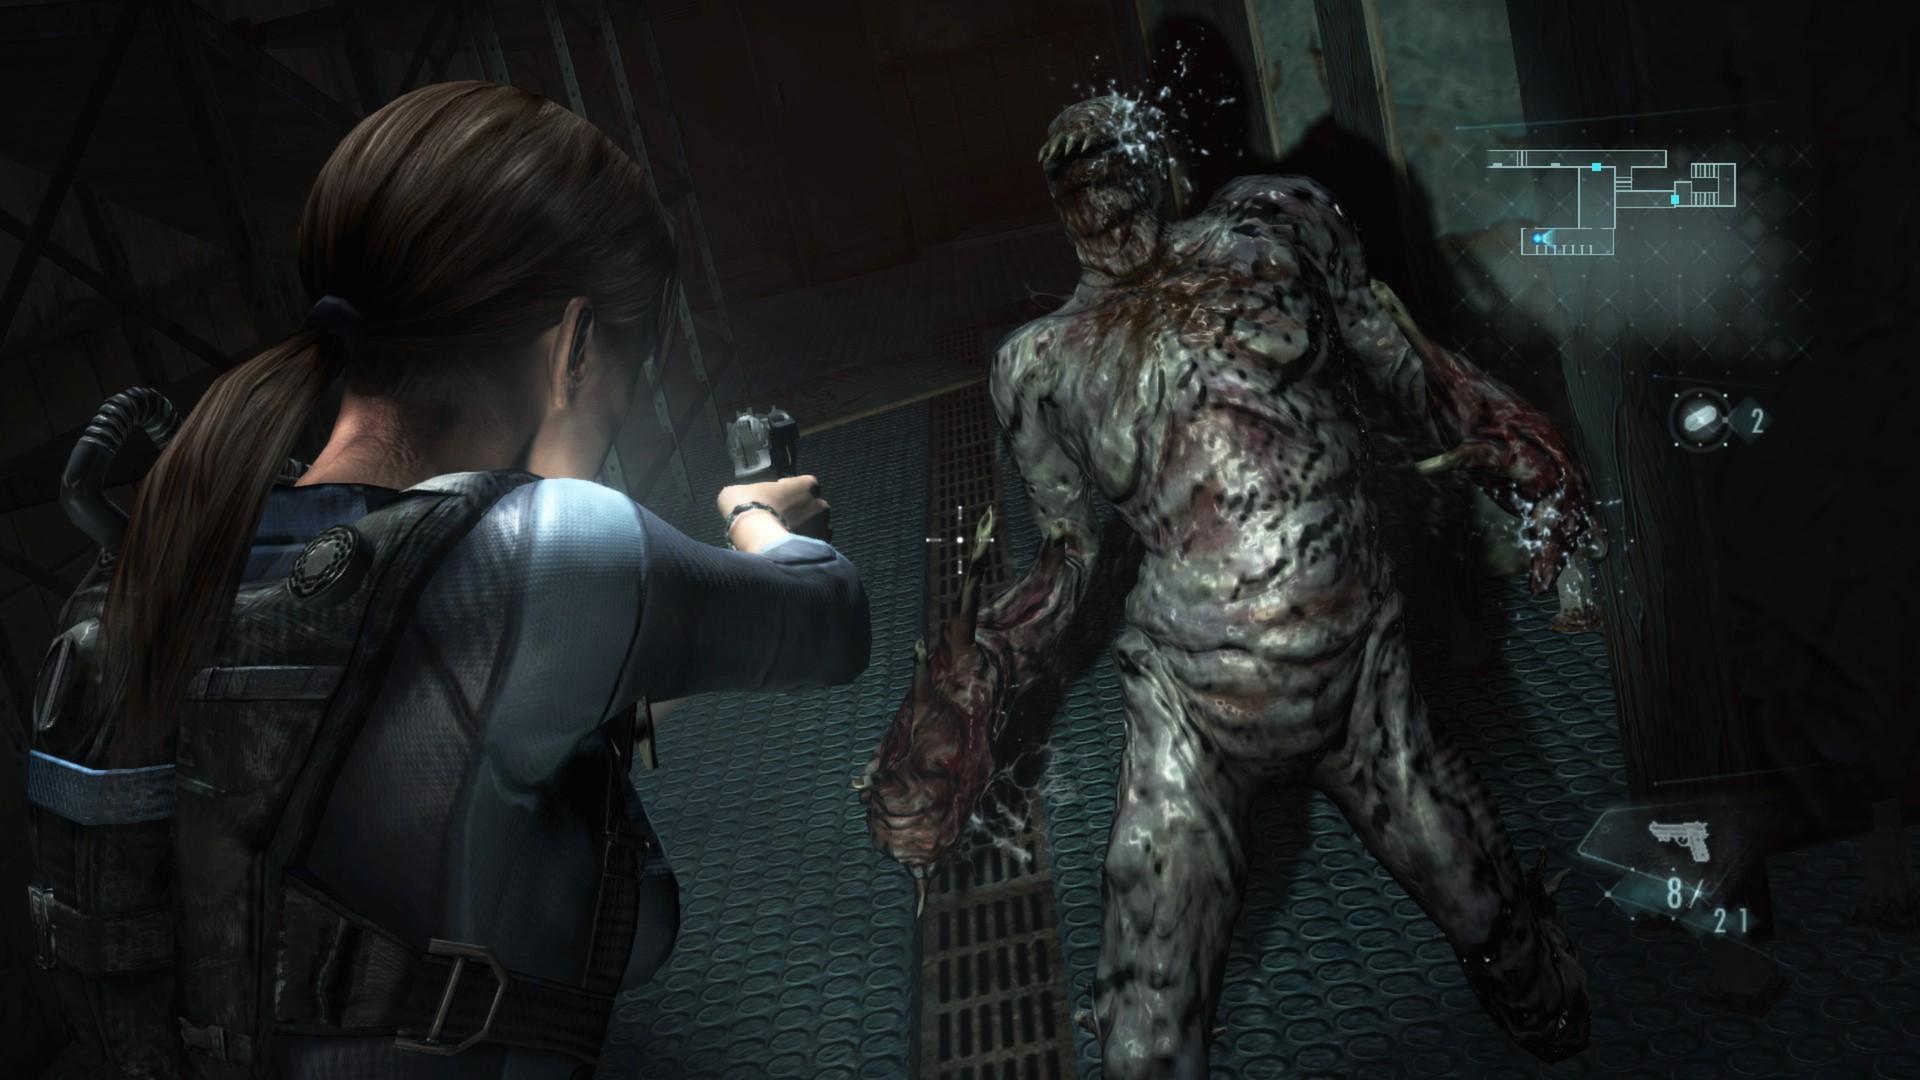 Screenshot №6 from game Resident Evil Revelations